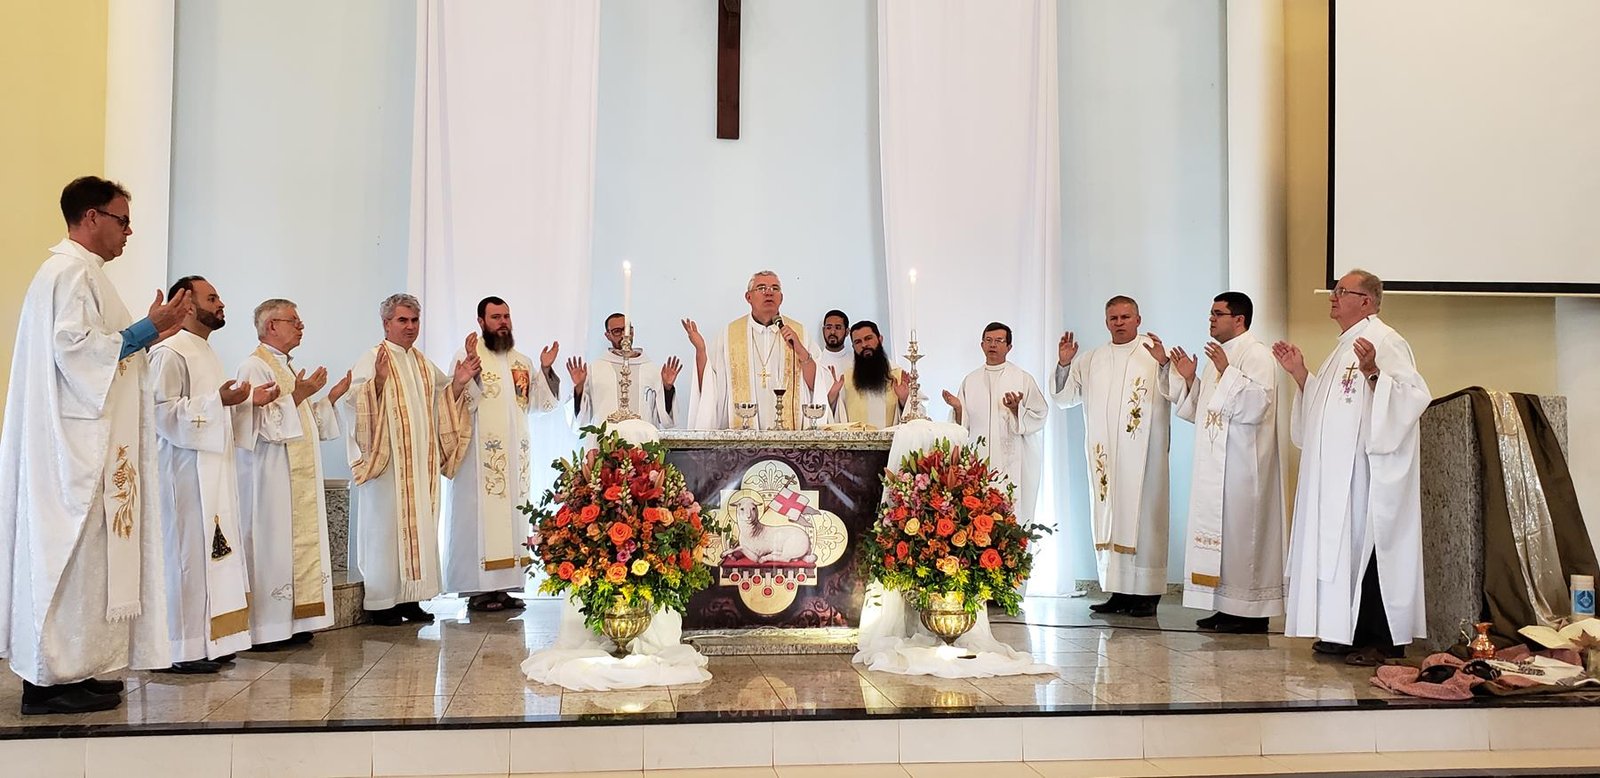 Dom Geremias celebra em ação de graças pelos religiosos da arquidiocese